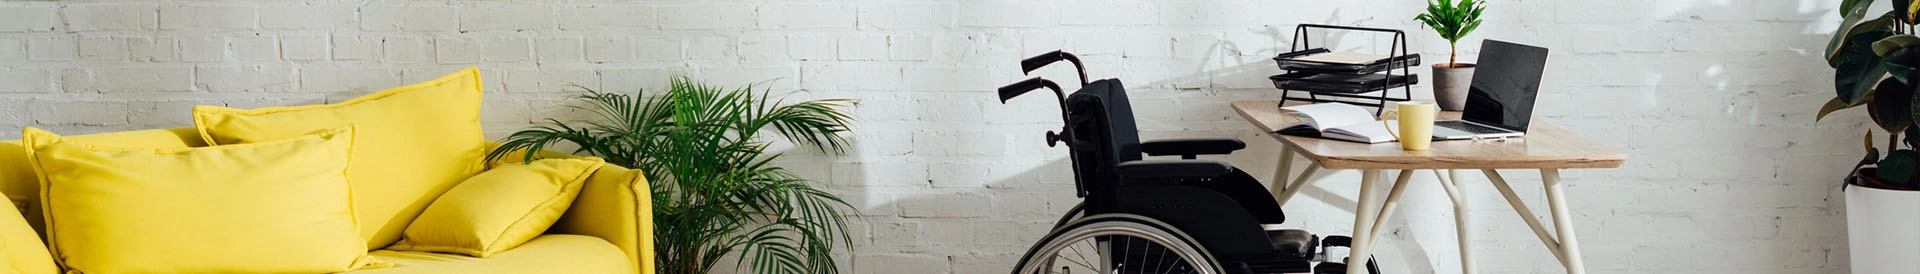 Wózek inwalidzki w salonie